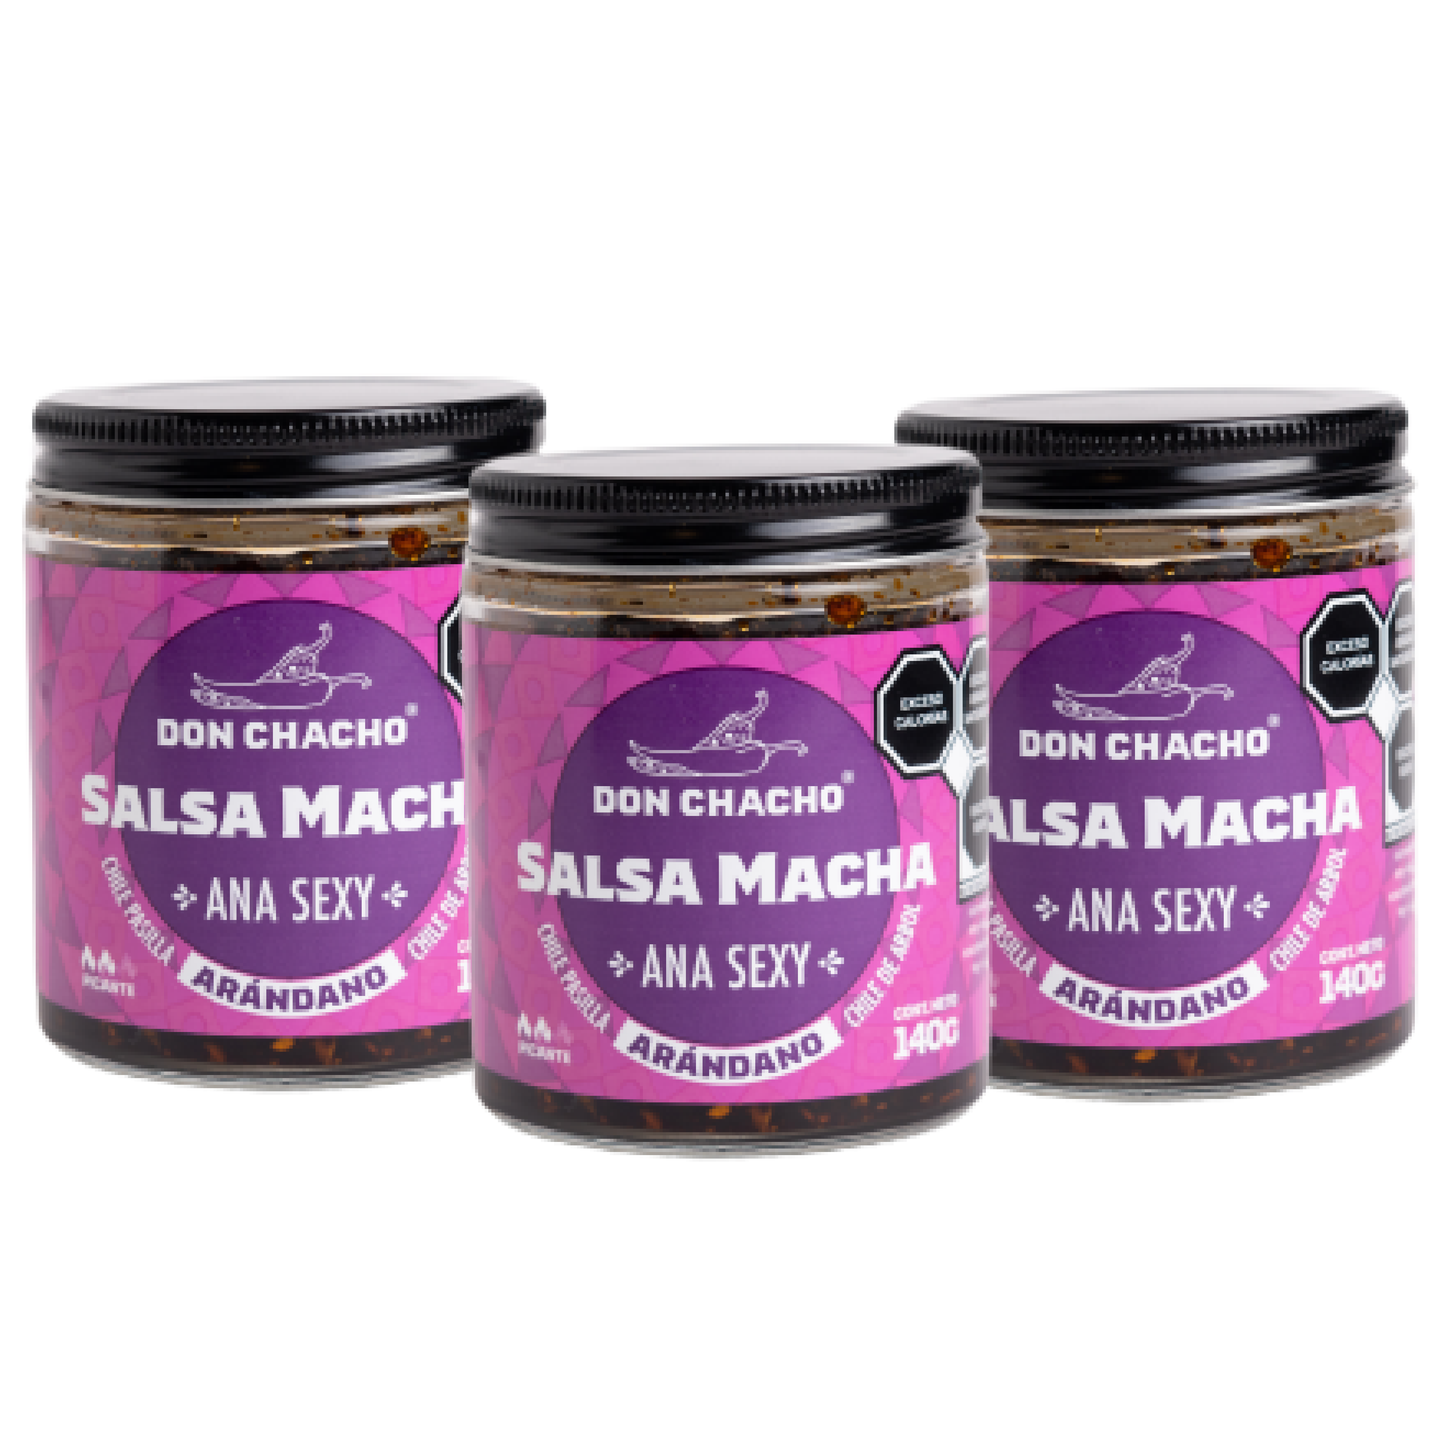 Salsa Macha Arándano “Ana Sexy” - Hecho a base de Chile Pasilla, Árbol y Arándano - Disfrútalos con Tacos, Quesadillas, Ensaladas, Sushi, Pizzas o Cualquier Otro Platillo.